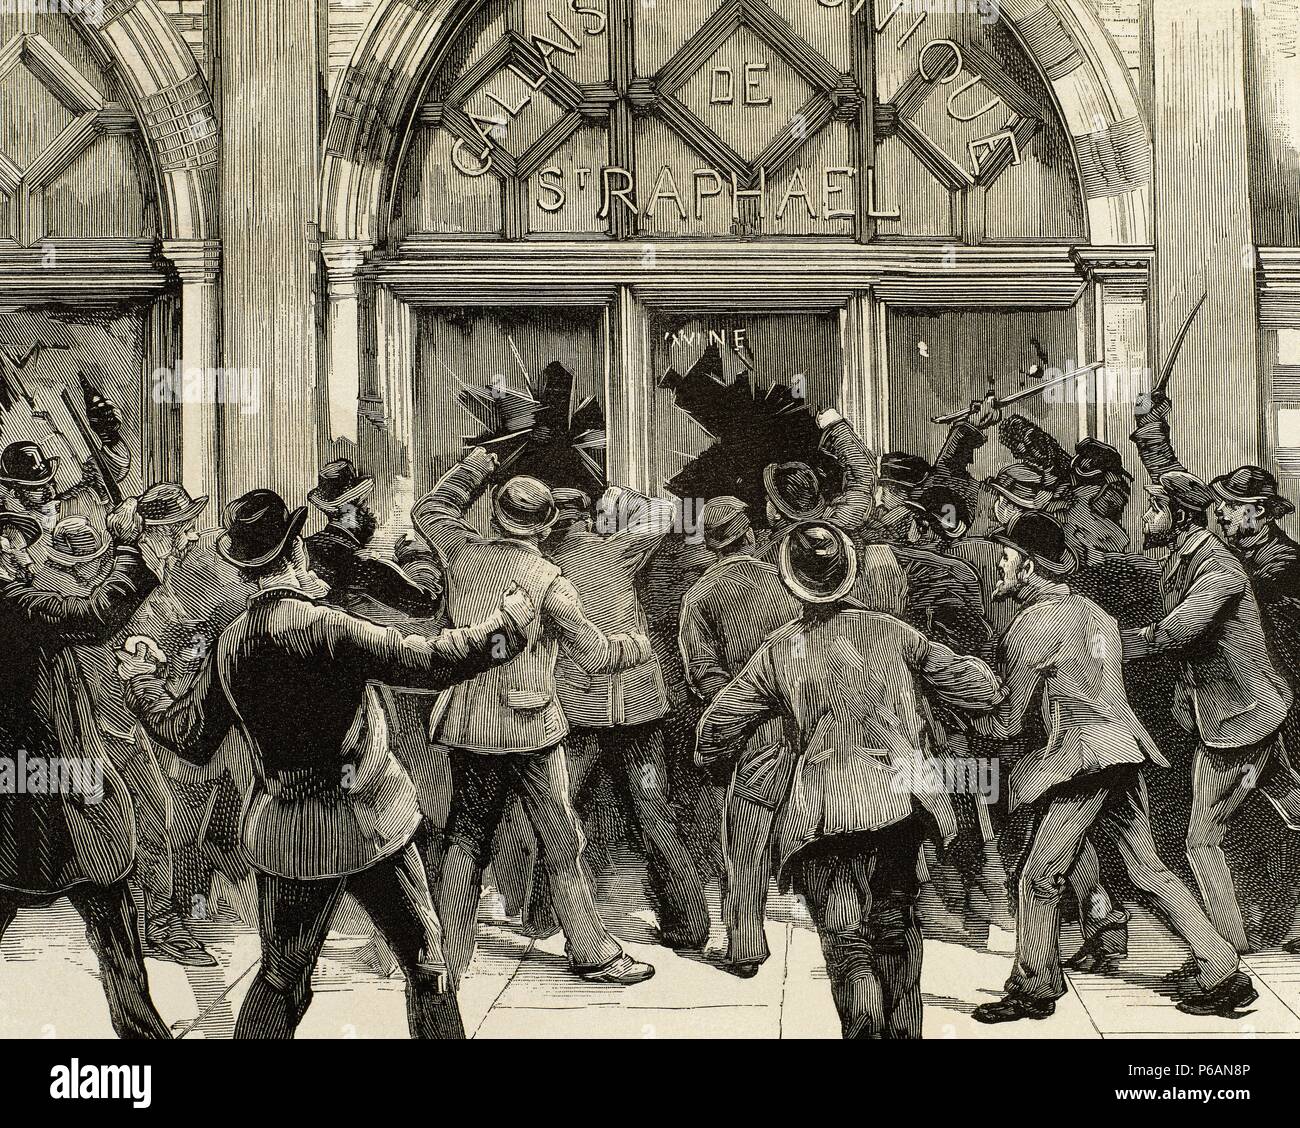 Großbritannien. London. Sozialistische agitation. Die Demonstranten ermutigt, Diebstahl und Plünderung in Geschäften Picadilly während des Treffens der sozialistischen Führer brennt auf dem Trafalgar Square. Februar 8, 1886. Gravur. Stockfoto